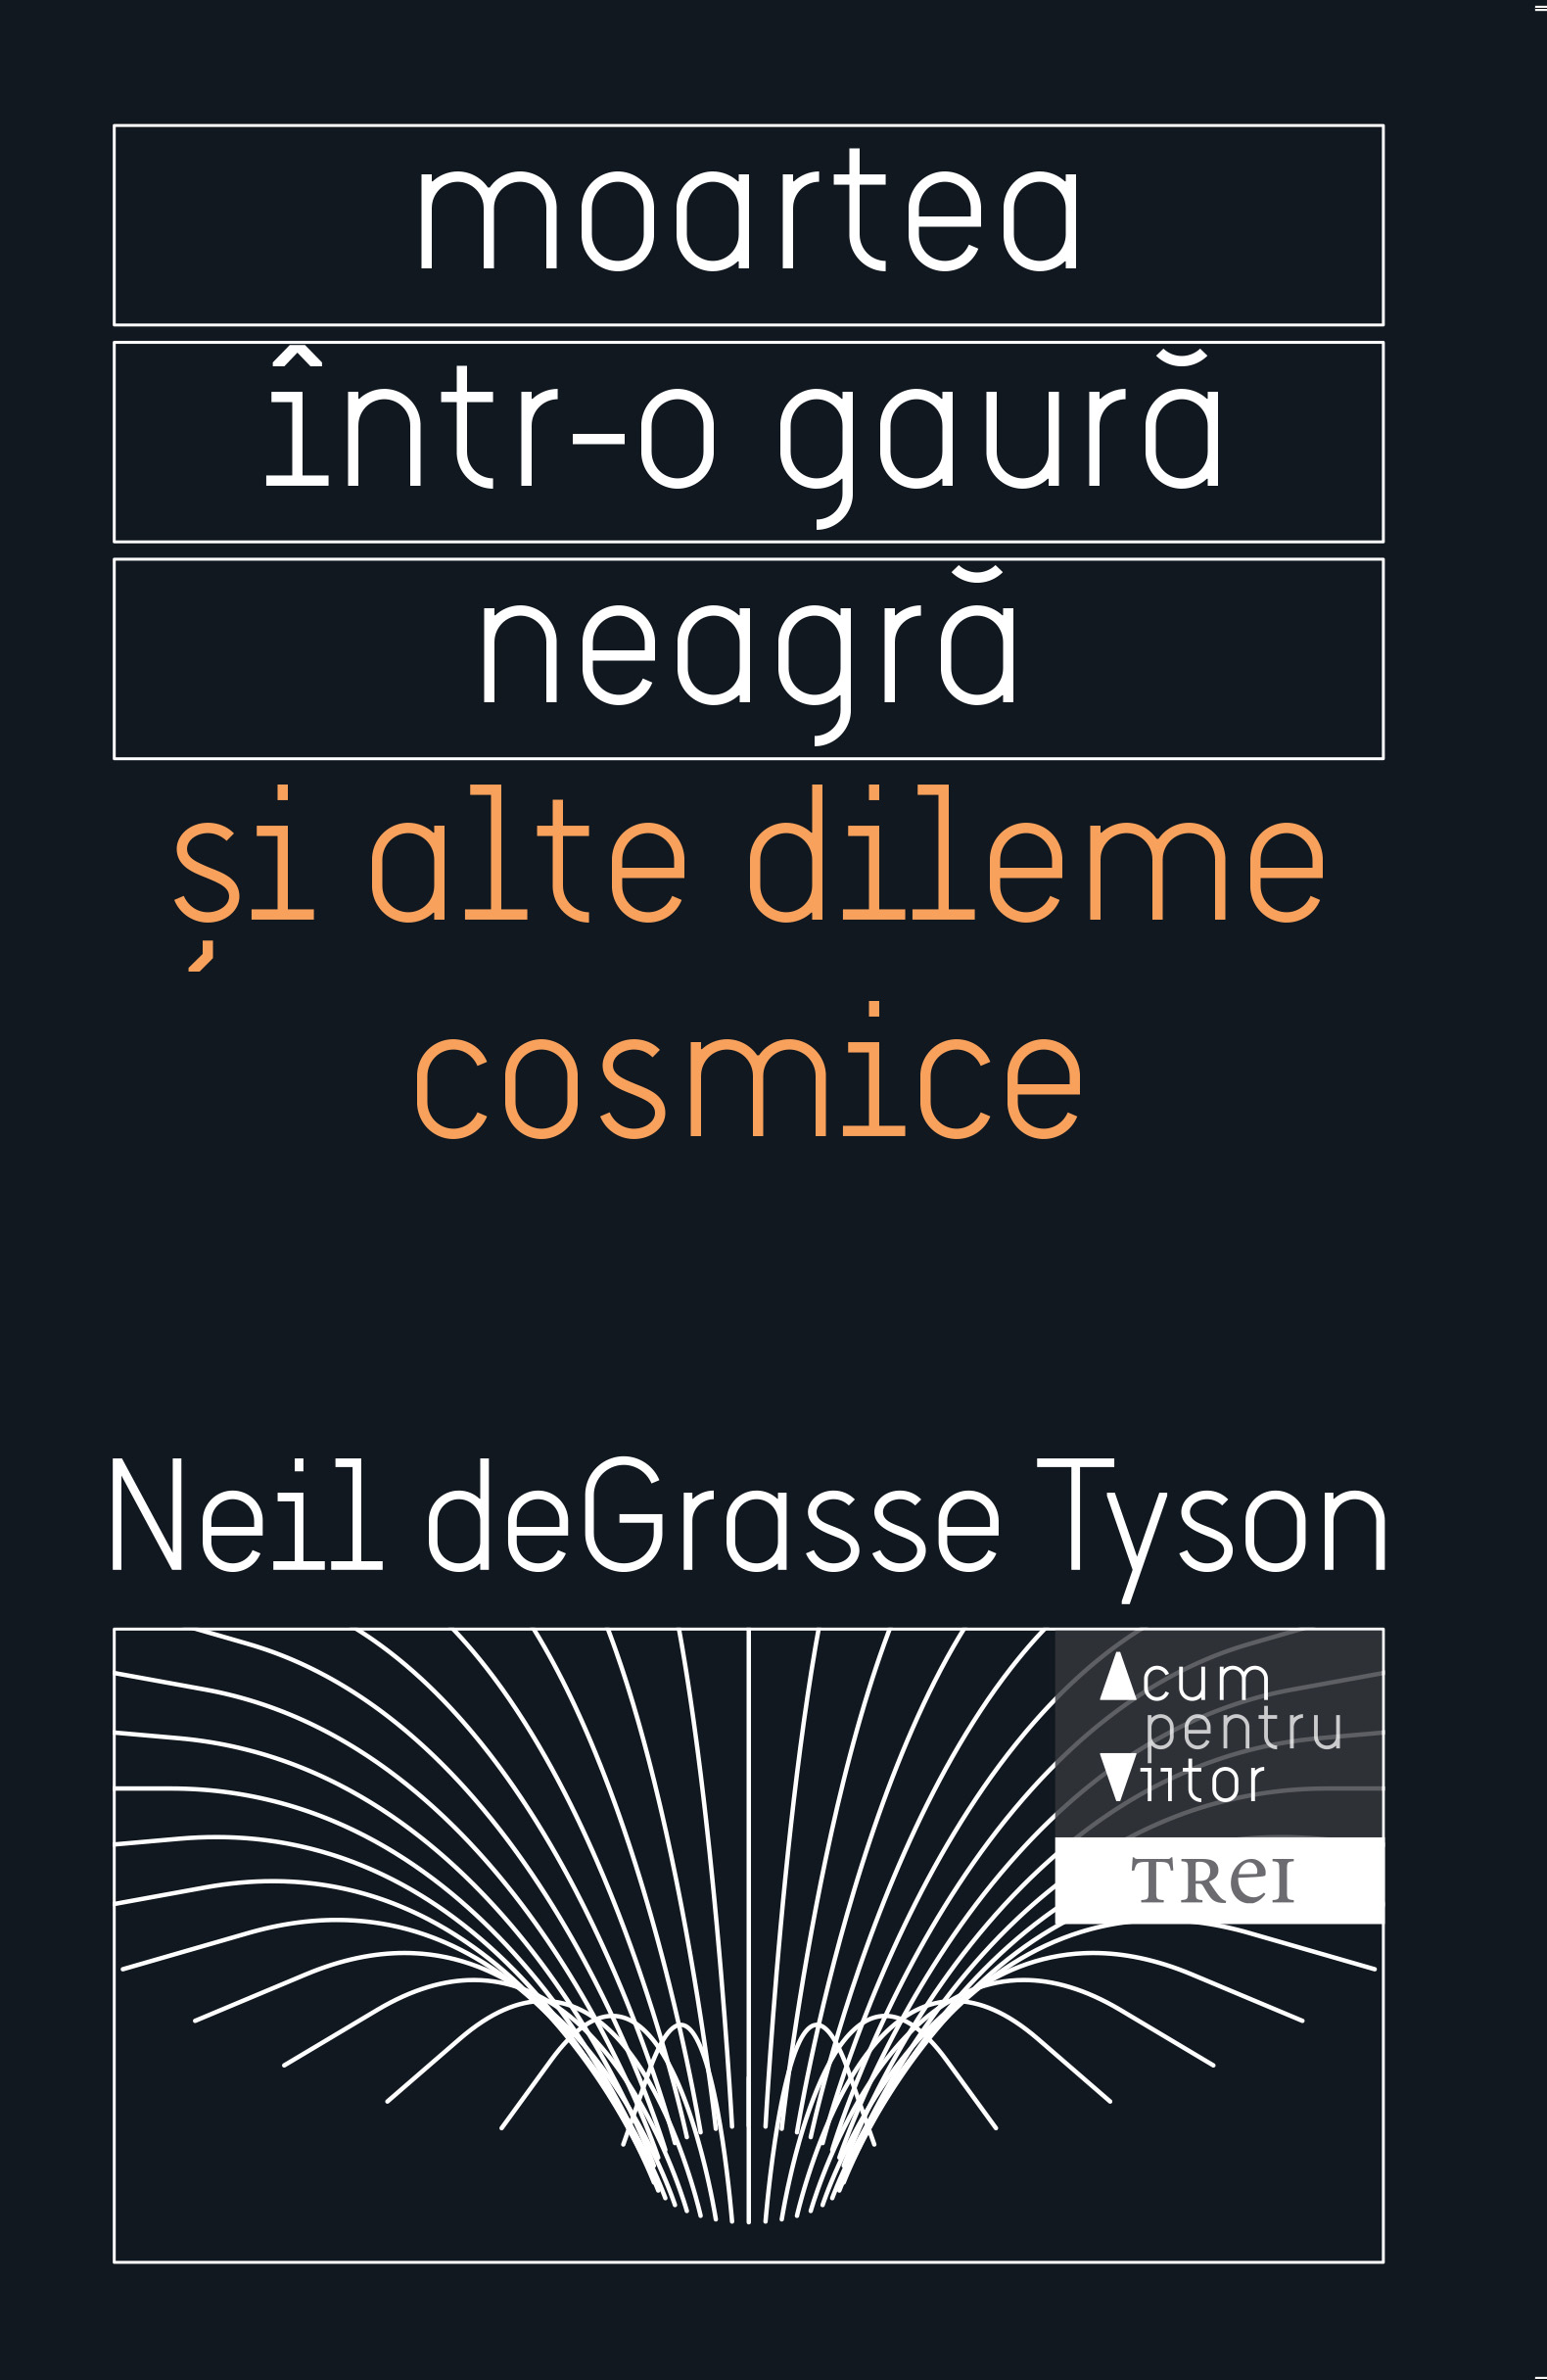 Moartea intr-o gaura neagra si alte dileme cosmice | Neil deGrasse Tyson carturesti.ro imagine 2022 cartile.ro